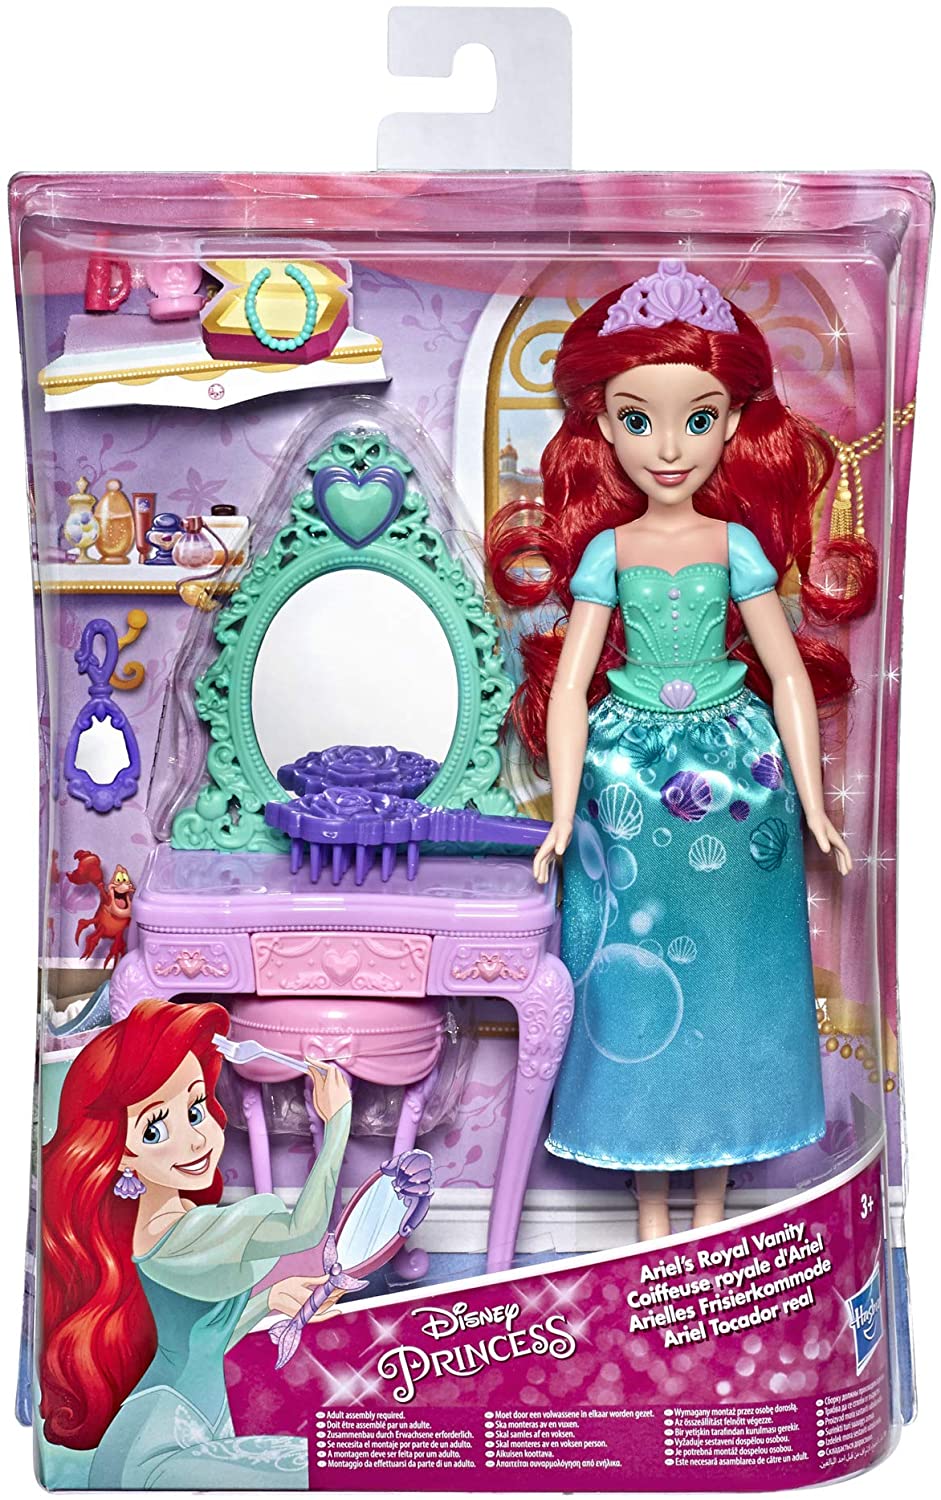 Die königliche Eitelkeit der Disney-Prinzessin Ariel